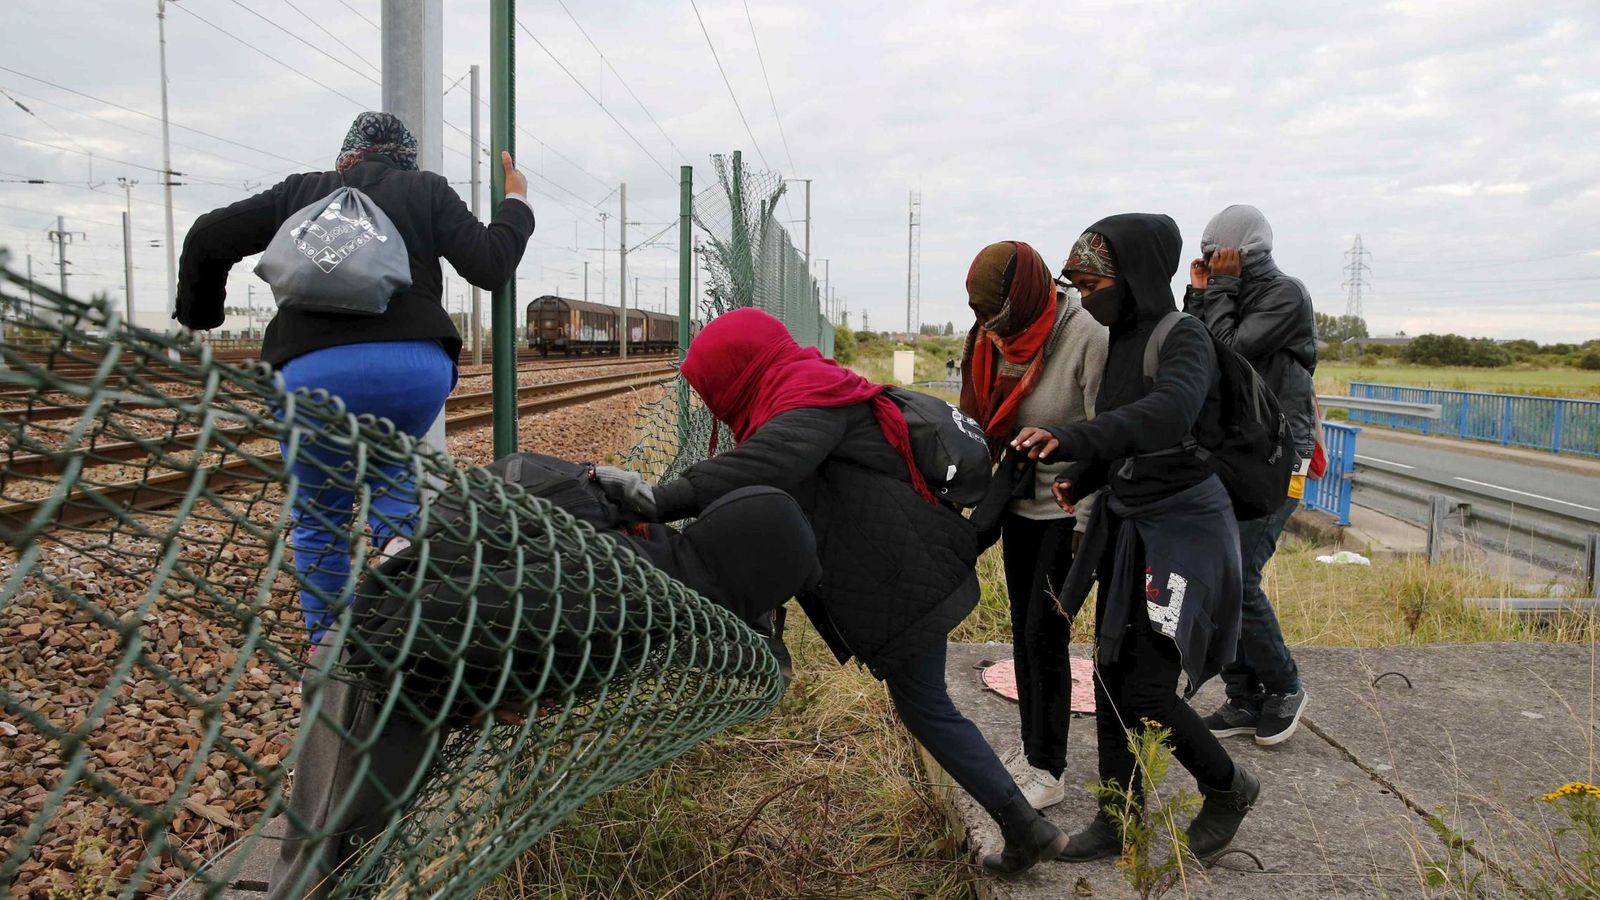 Foto: El Gobierno francés ha enviado 120 policías a la zona de Calais para ayudar a la empresa gestora del Eurotúnel a detener a los inmigrantes que intentan pasar a Inglaterra (REUTERS)